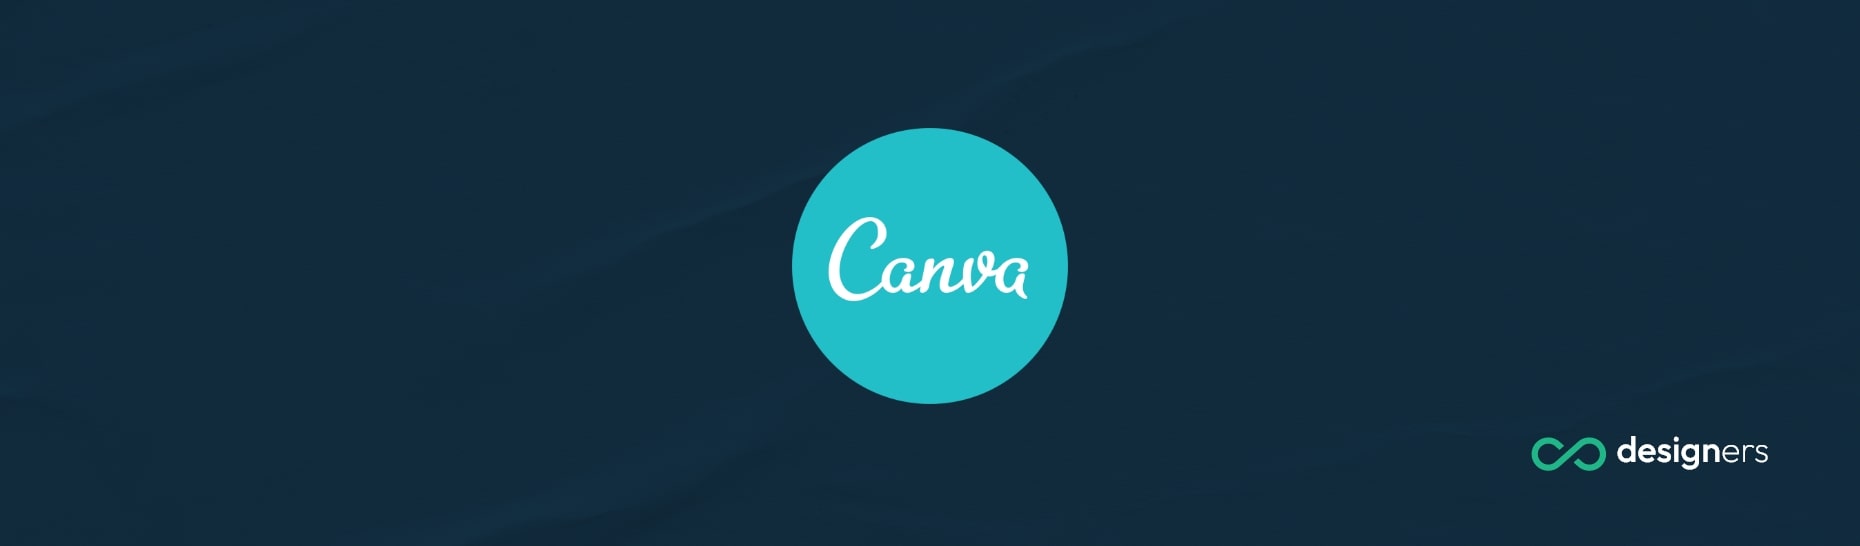 How Does Canva Do Marketing?